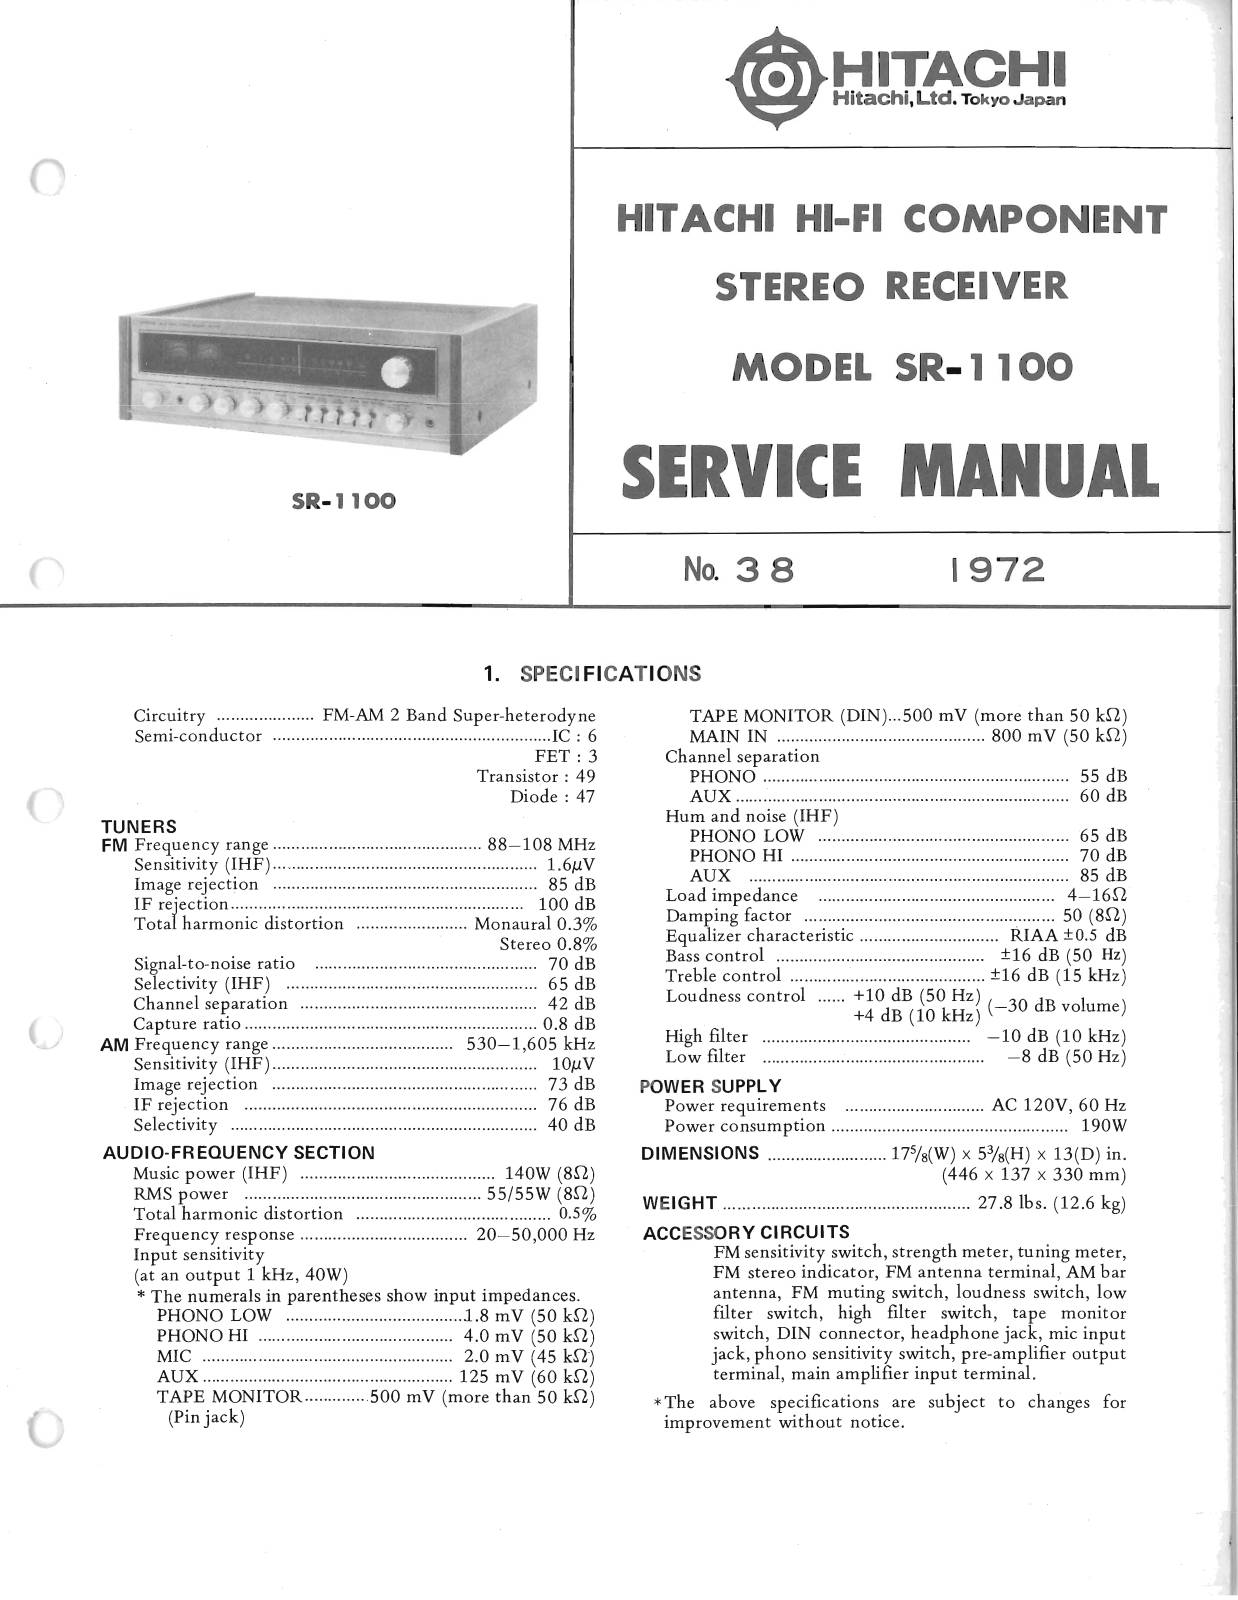 Hitachi SR-1100